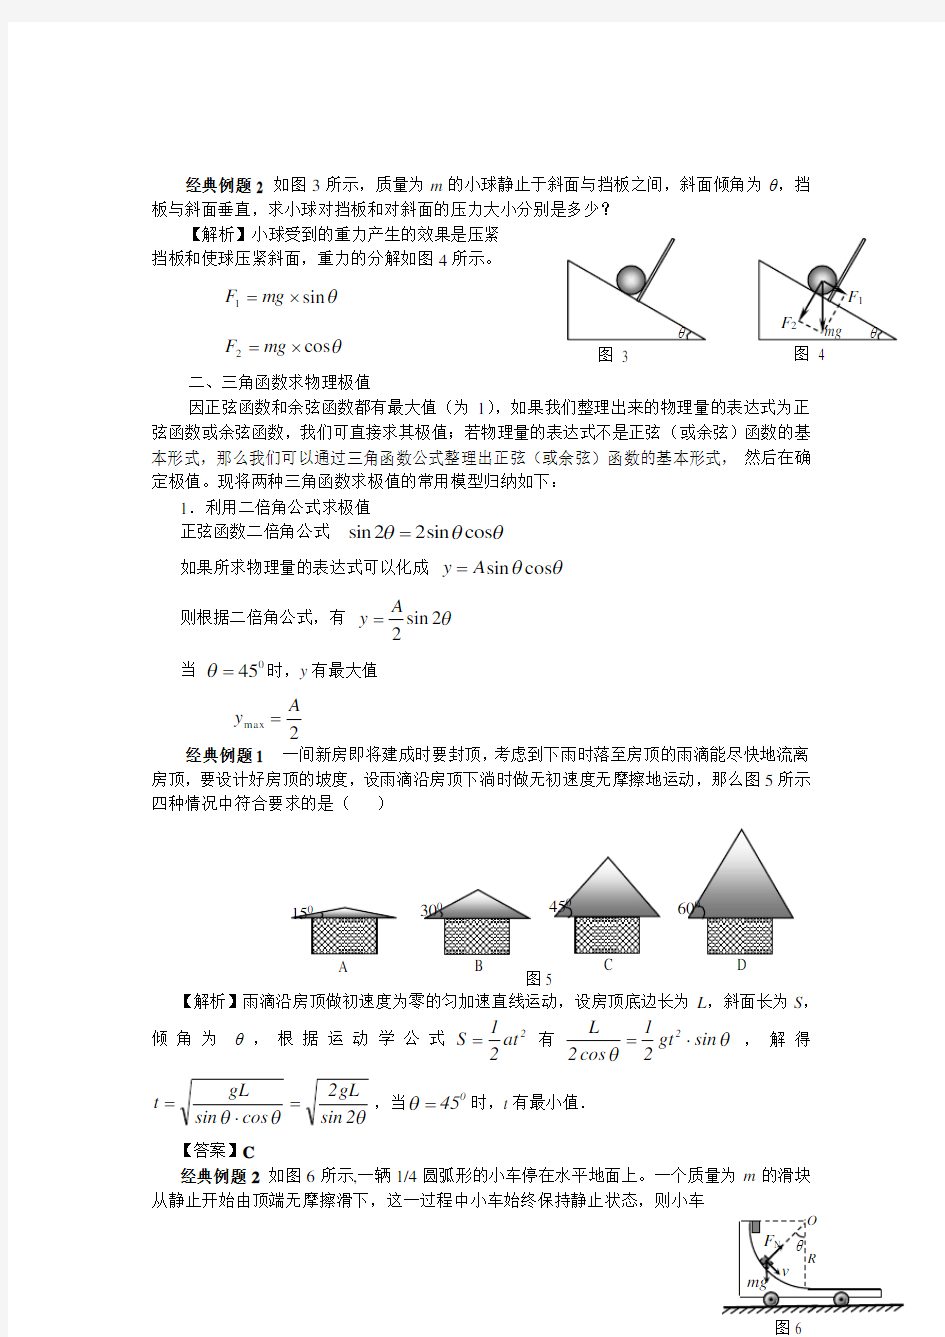 高中物理中常用的三角函数数学模型(强烈推荐!!!)